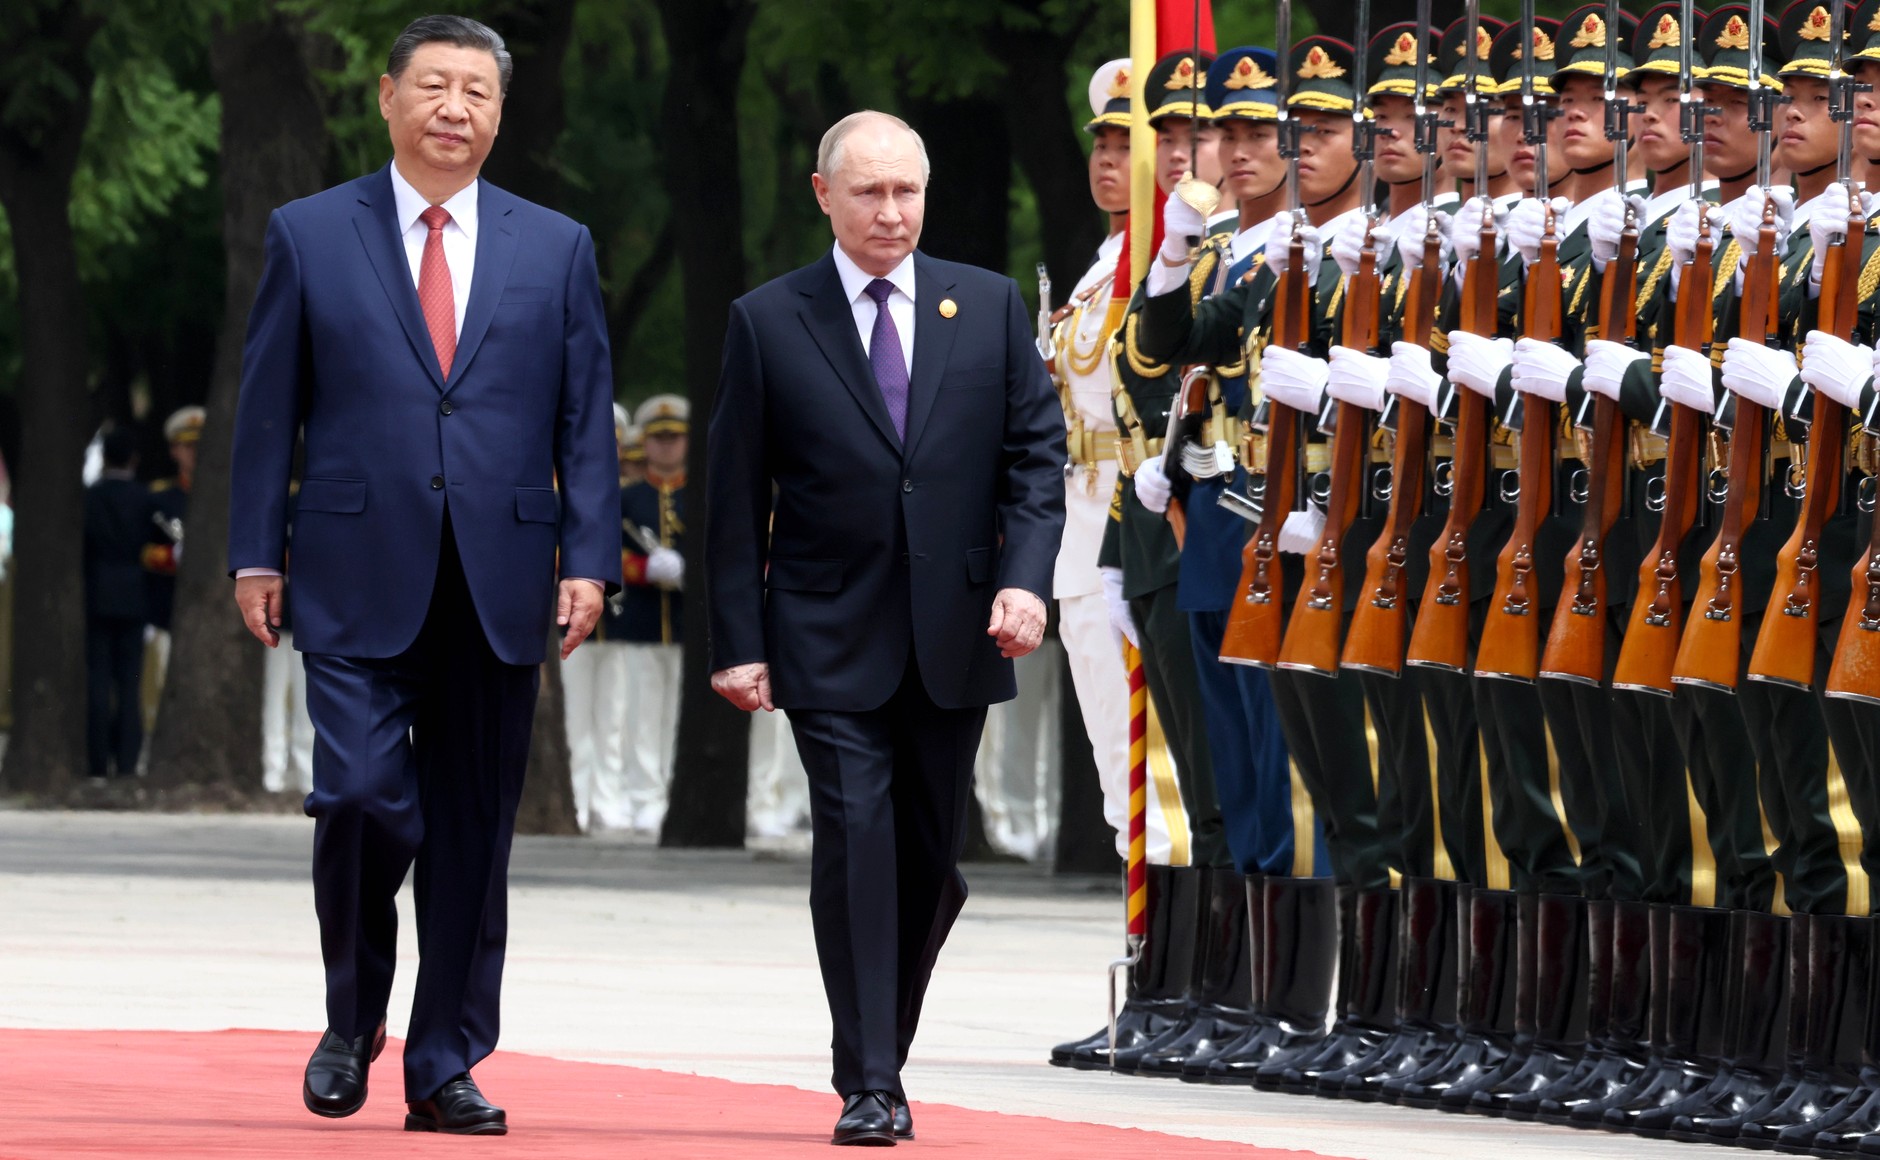 Ռուսաստանի Նախագահ Վլադիմիր Պուտինի այցը Չինաստան և դրա կարևորությունը Հայաստանի համար